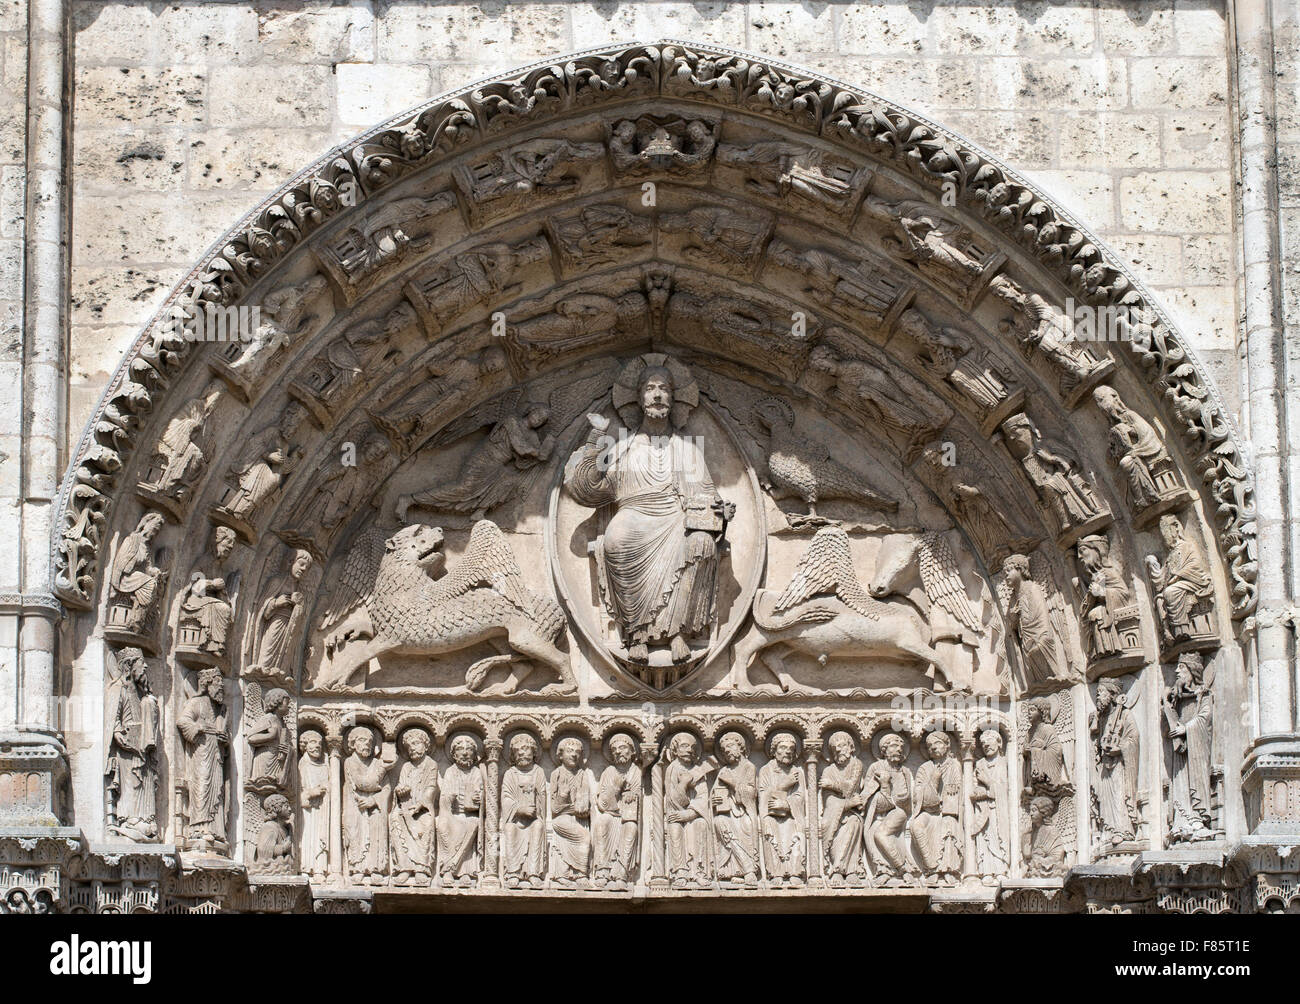 Le tympan central représentant le Christ et l'apocalypse, de la cathédrale de Chartres à l'ouest du transept, Eure-et-Loir, France, Europe Banque D'Images